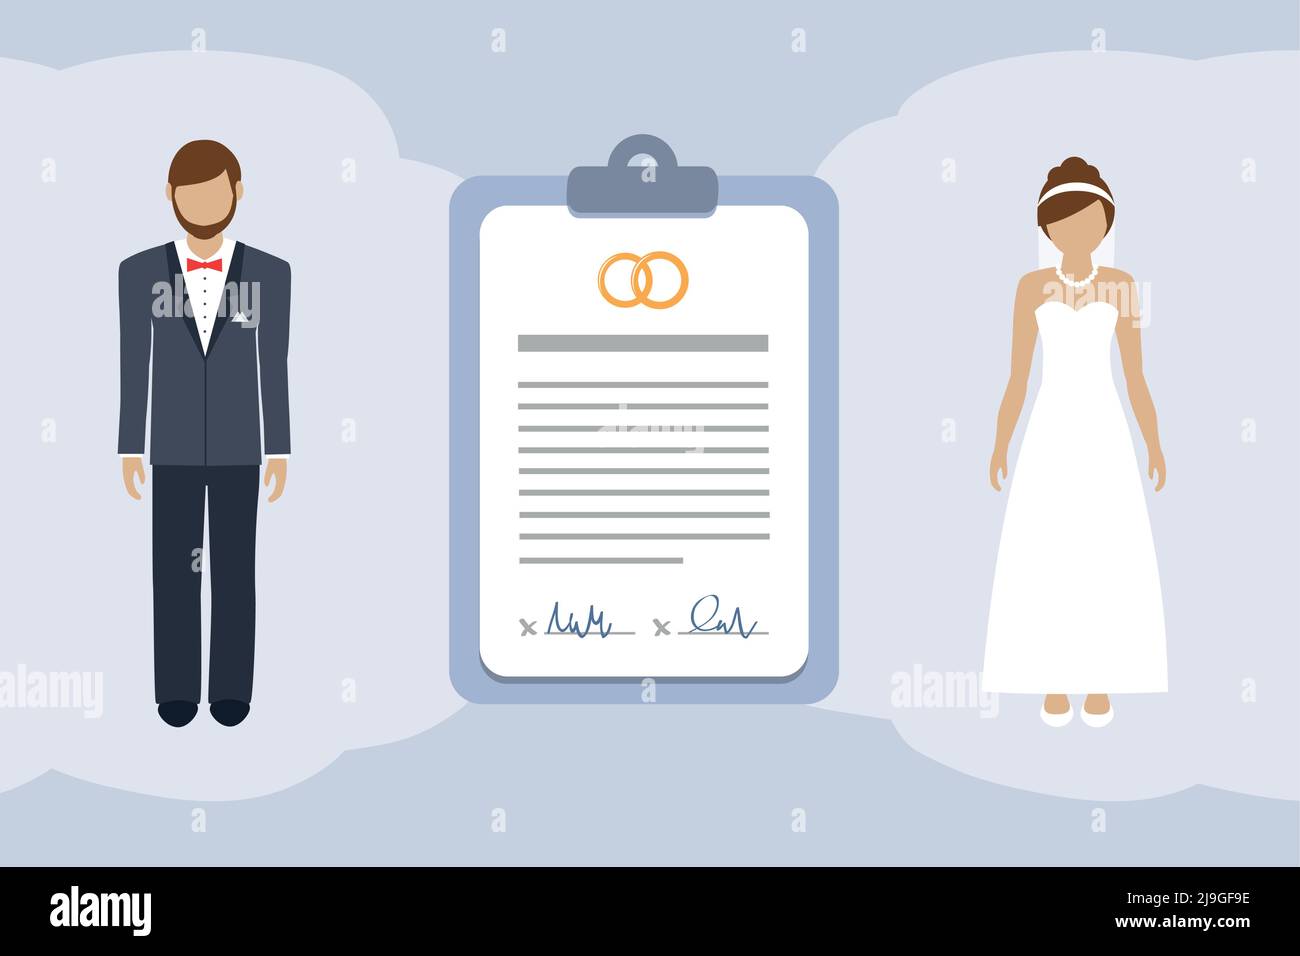 Infografik zum Ehevertrag mit dem Piktogramm eines verheirateten Paares Stock Vektor